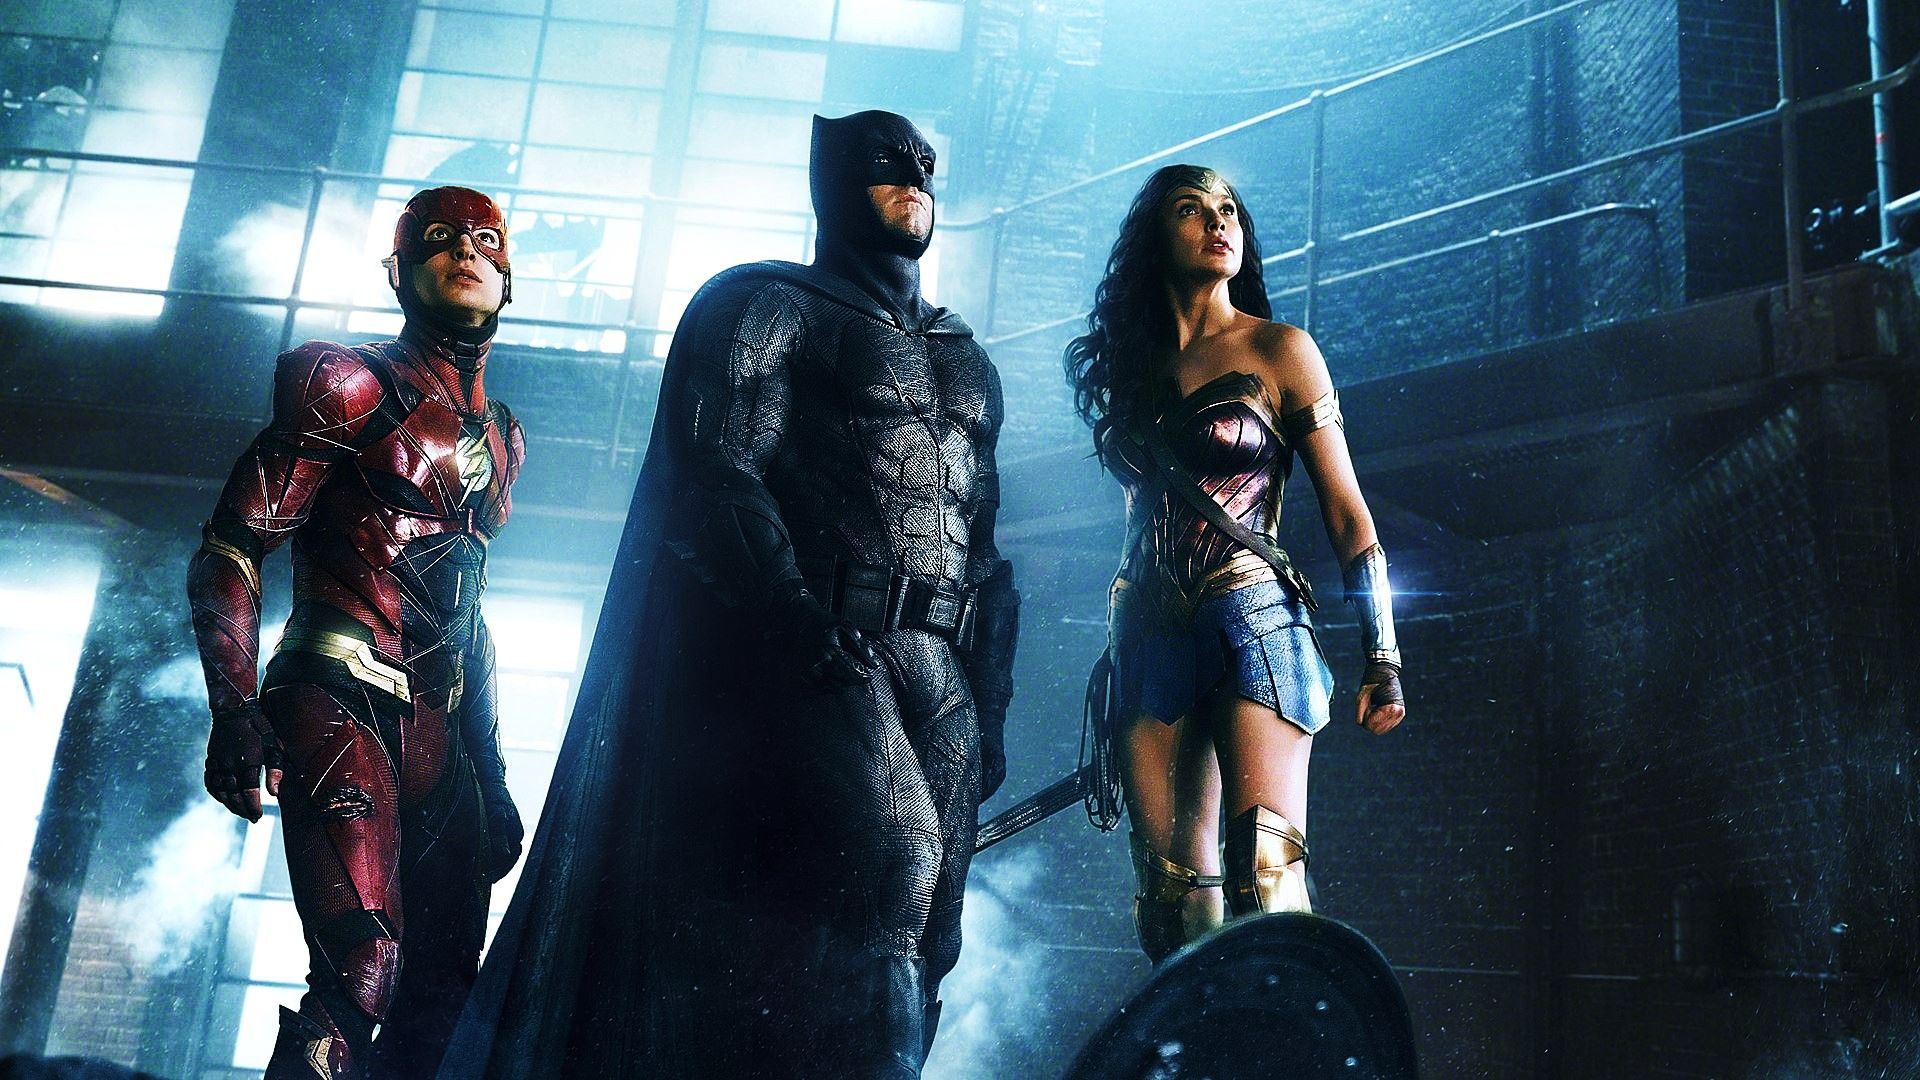 Warner planea estrenar 4 películas de DC al año a partir de 2022